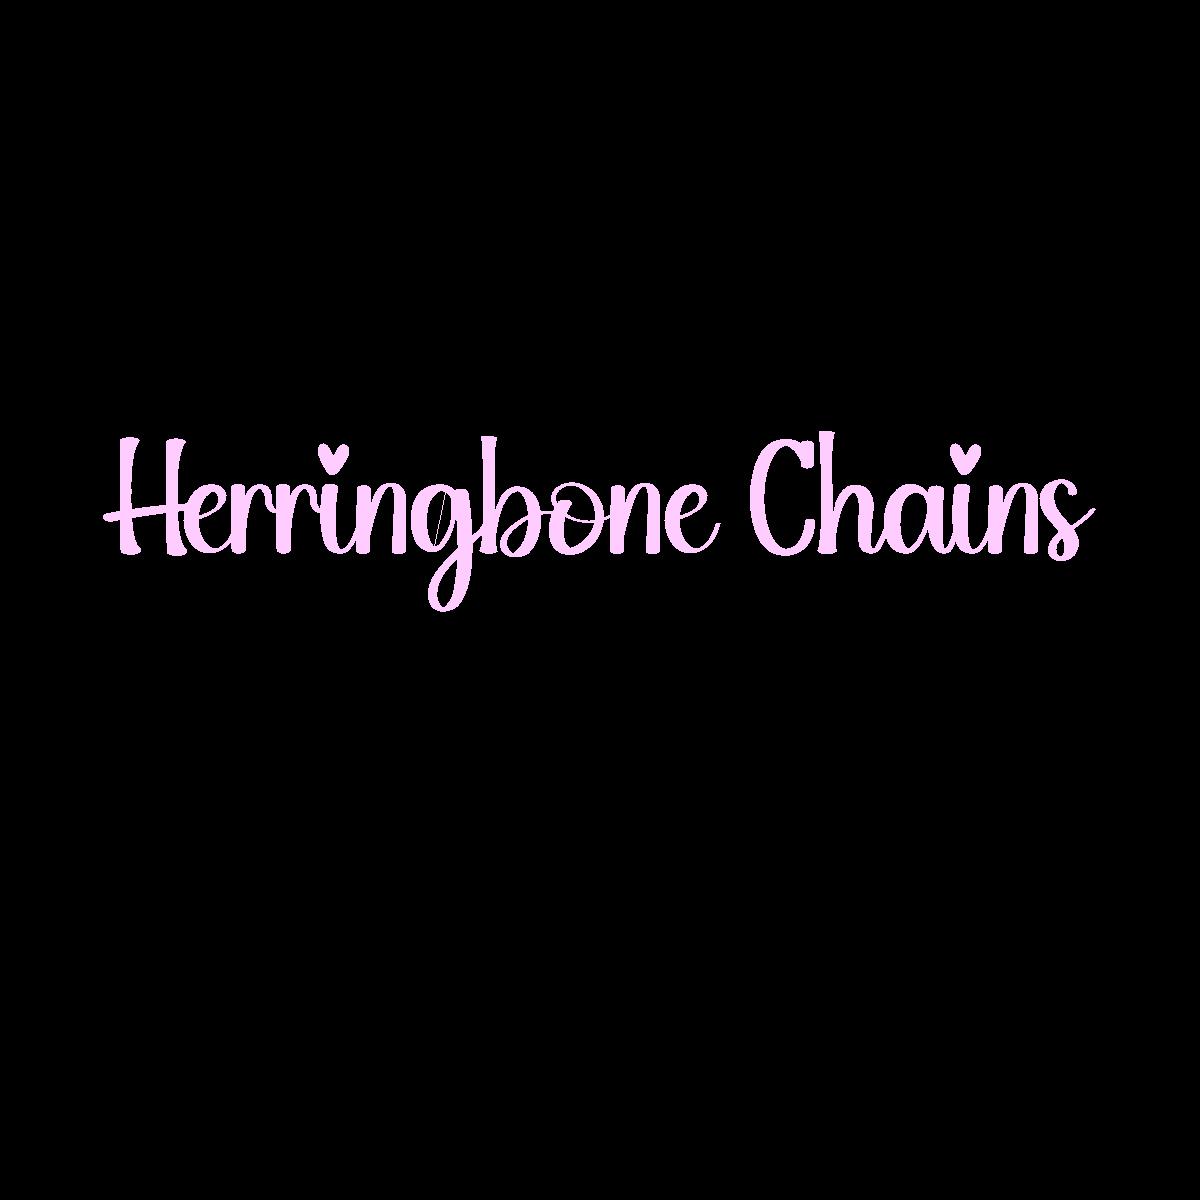 Chains-Herringbone Style 16"-20" - 10 Pack